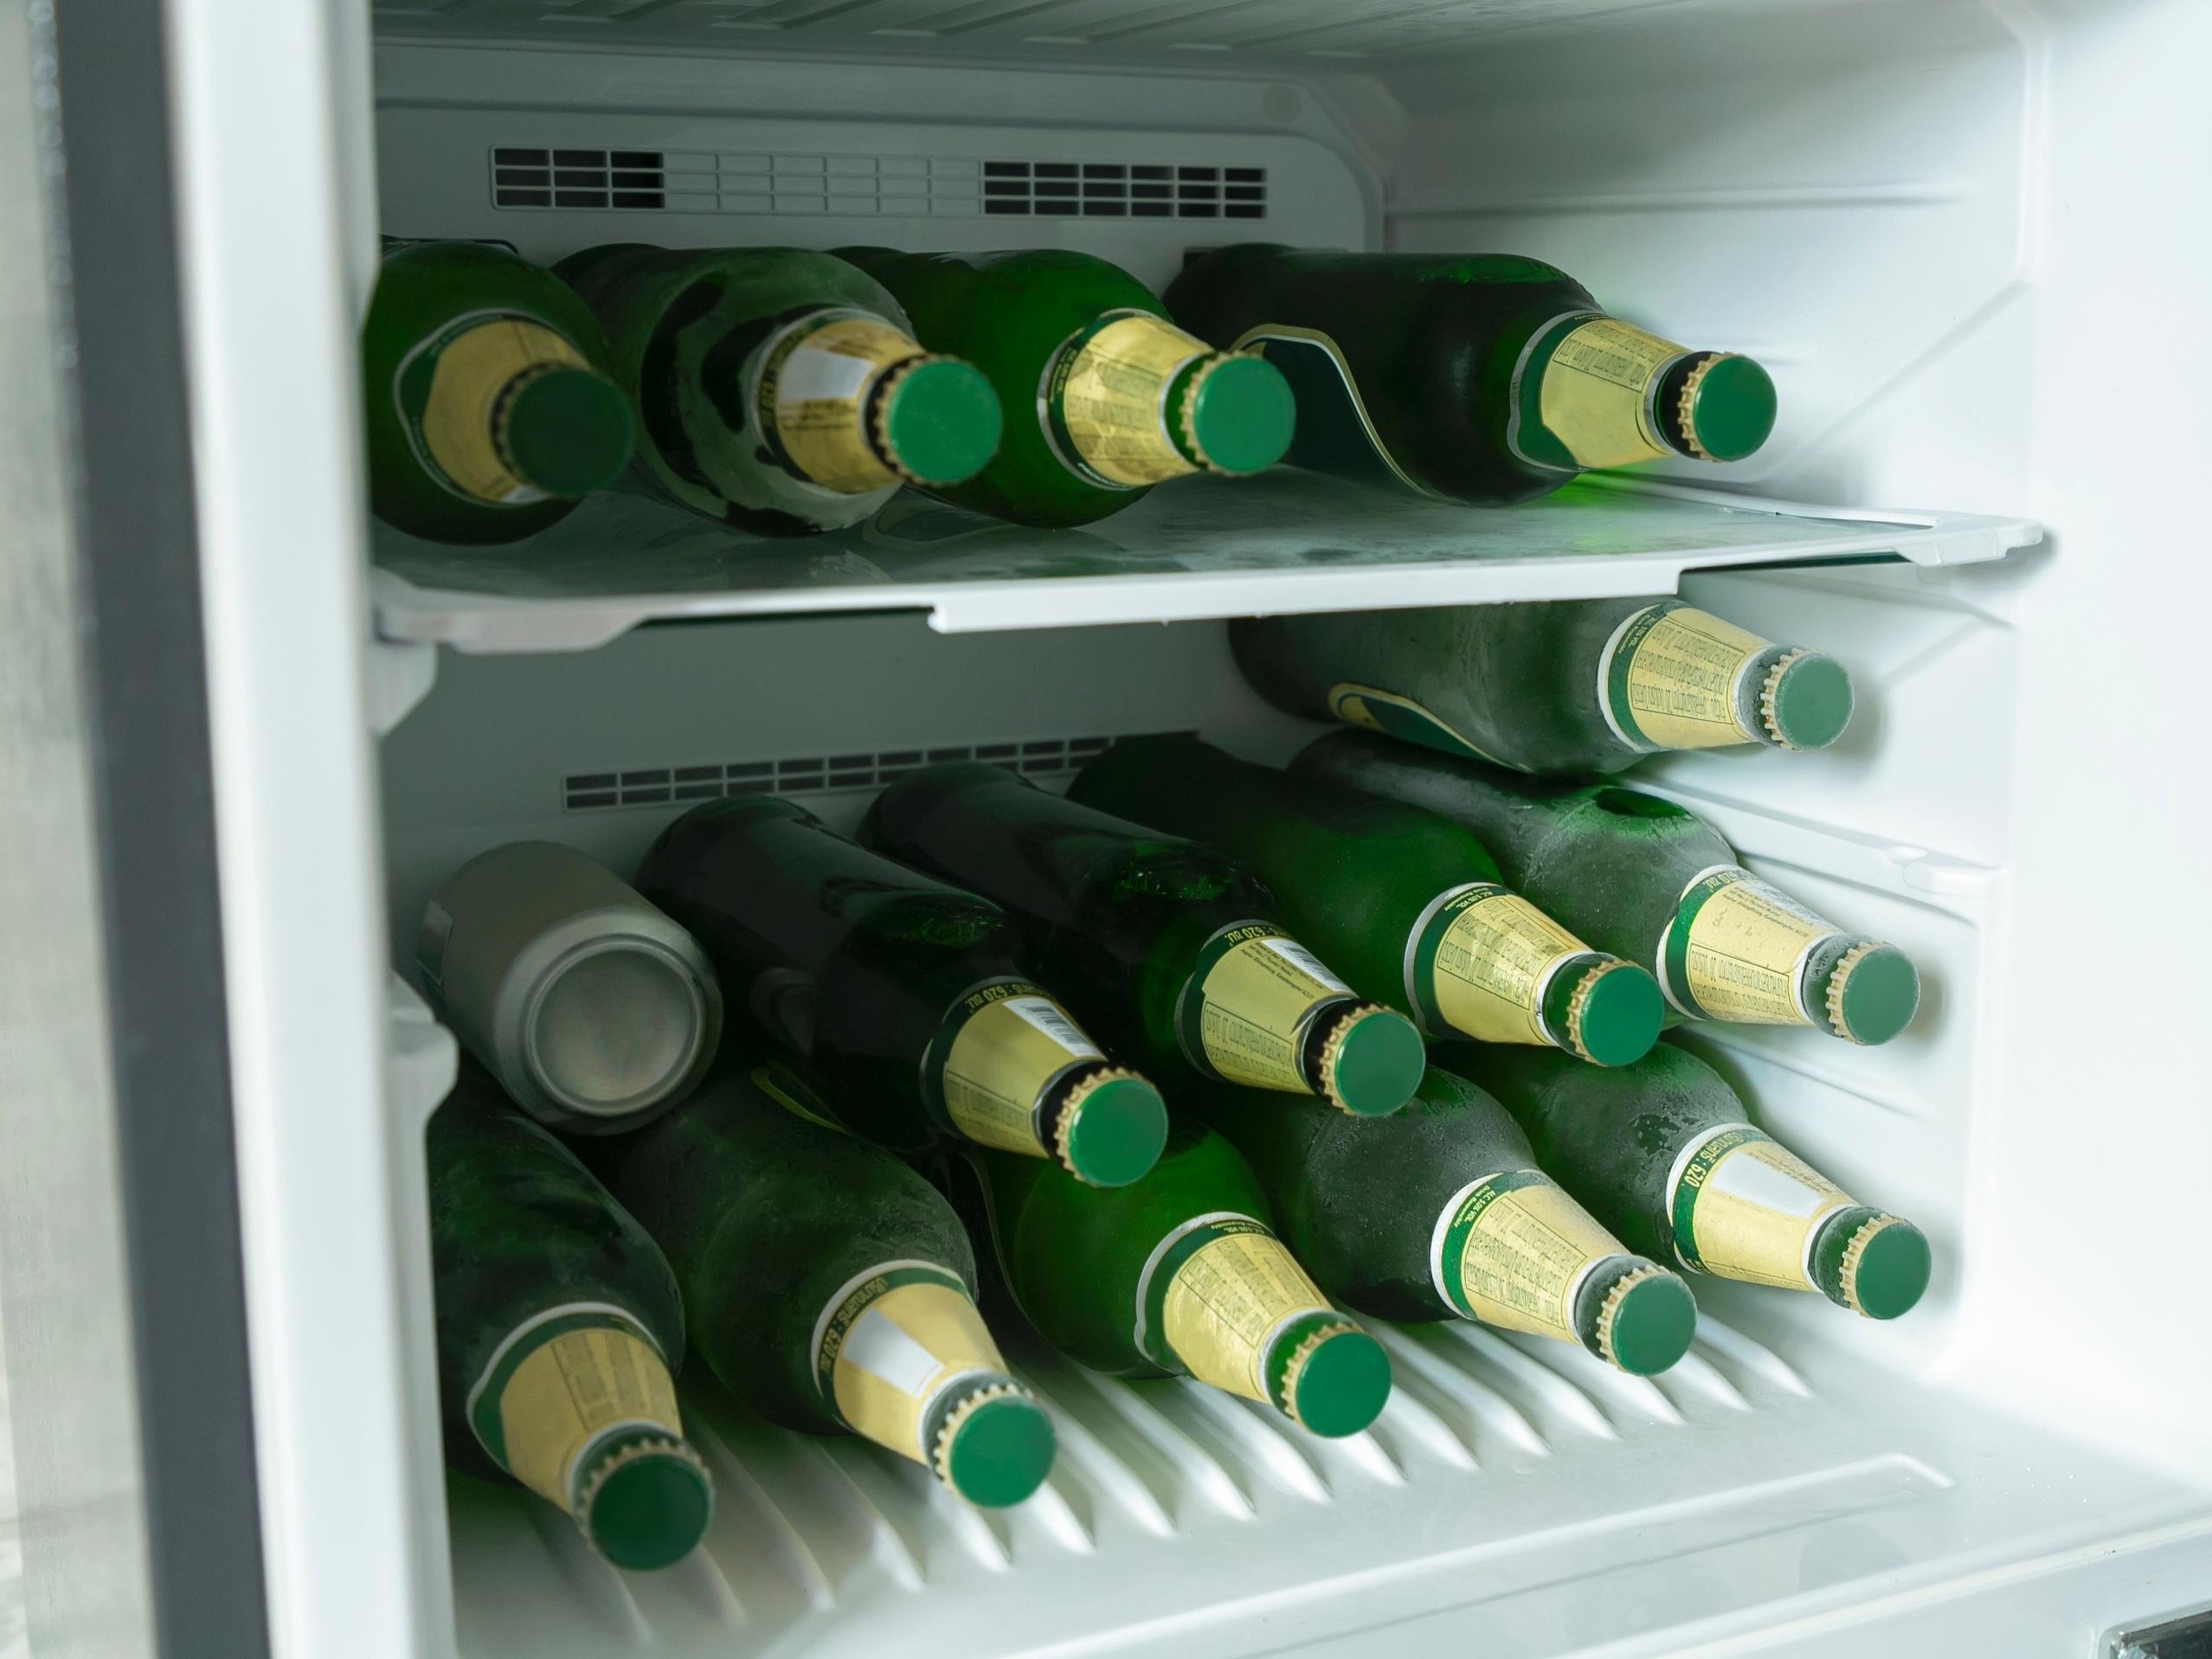 Por que a garrafa estoura no freezer? Pode regelar bebida?